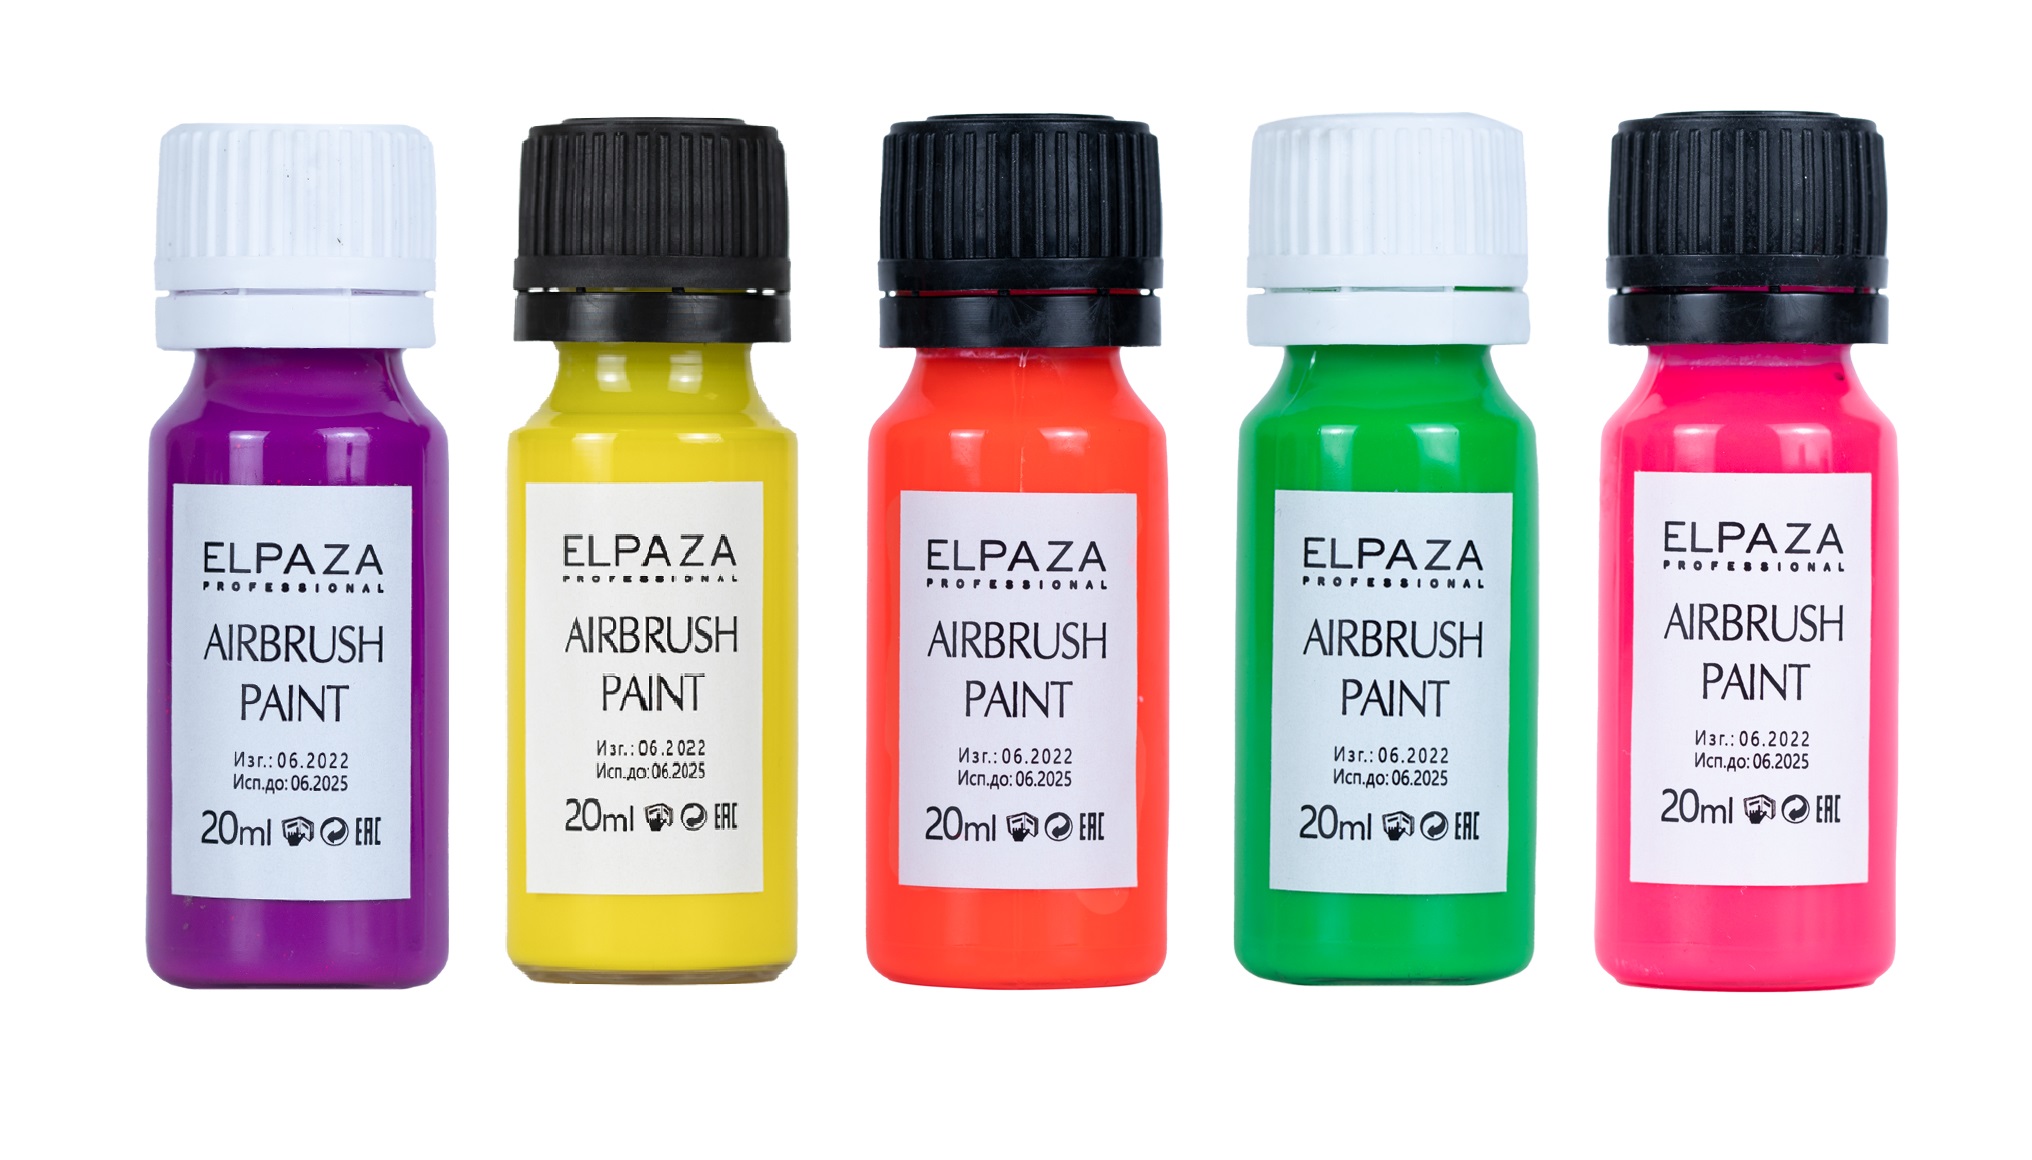 Краска неоновая для аэрографа Elpaza Airbrush Paint 5 шт краска для аэрографа elpaza airbrush paint перламутровая 5 шт